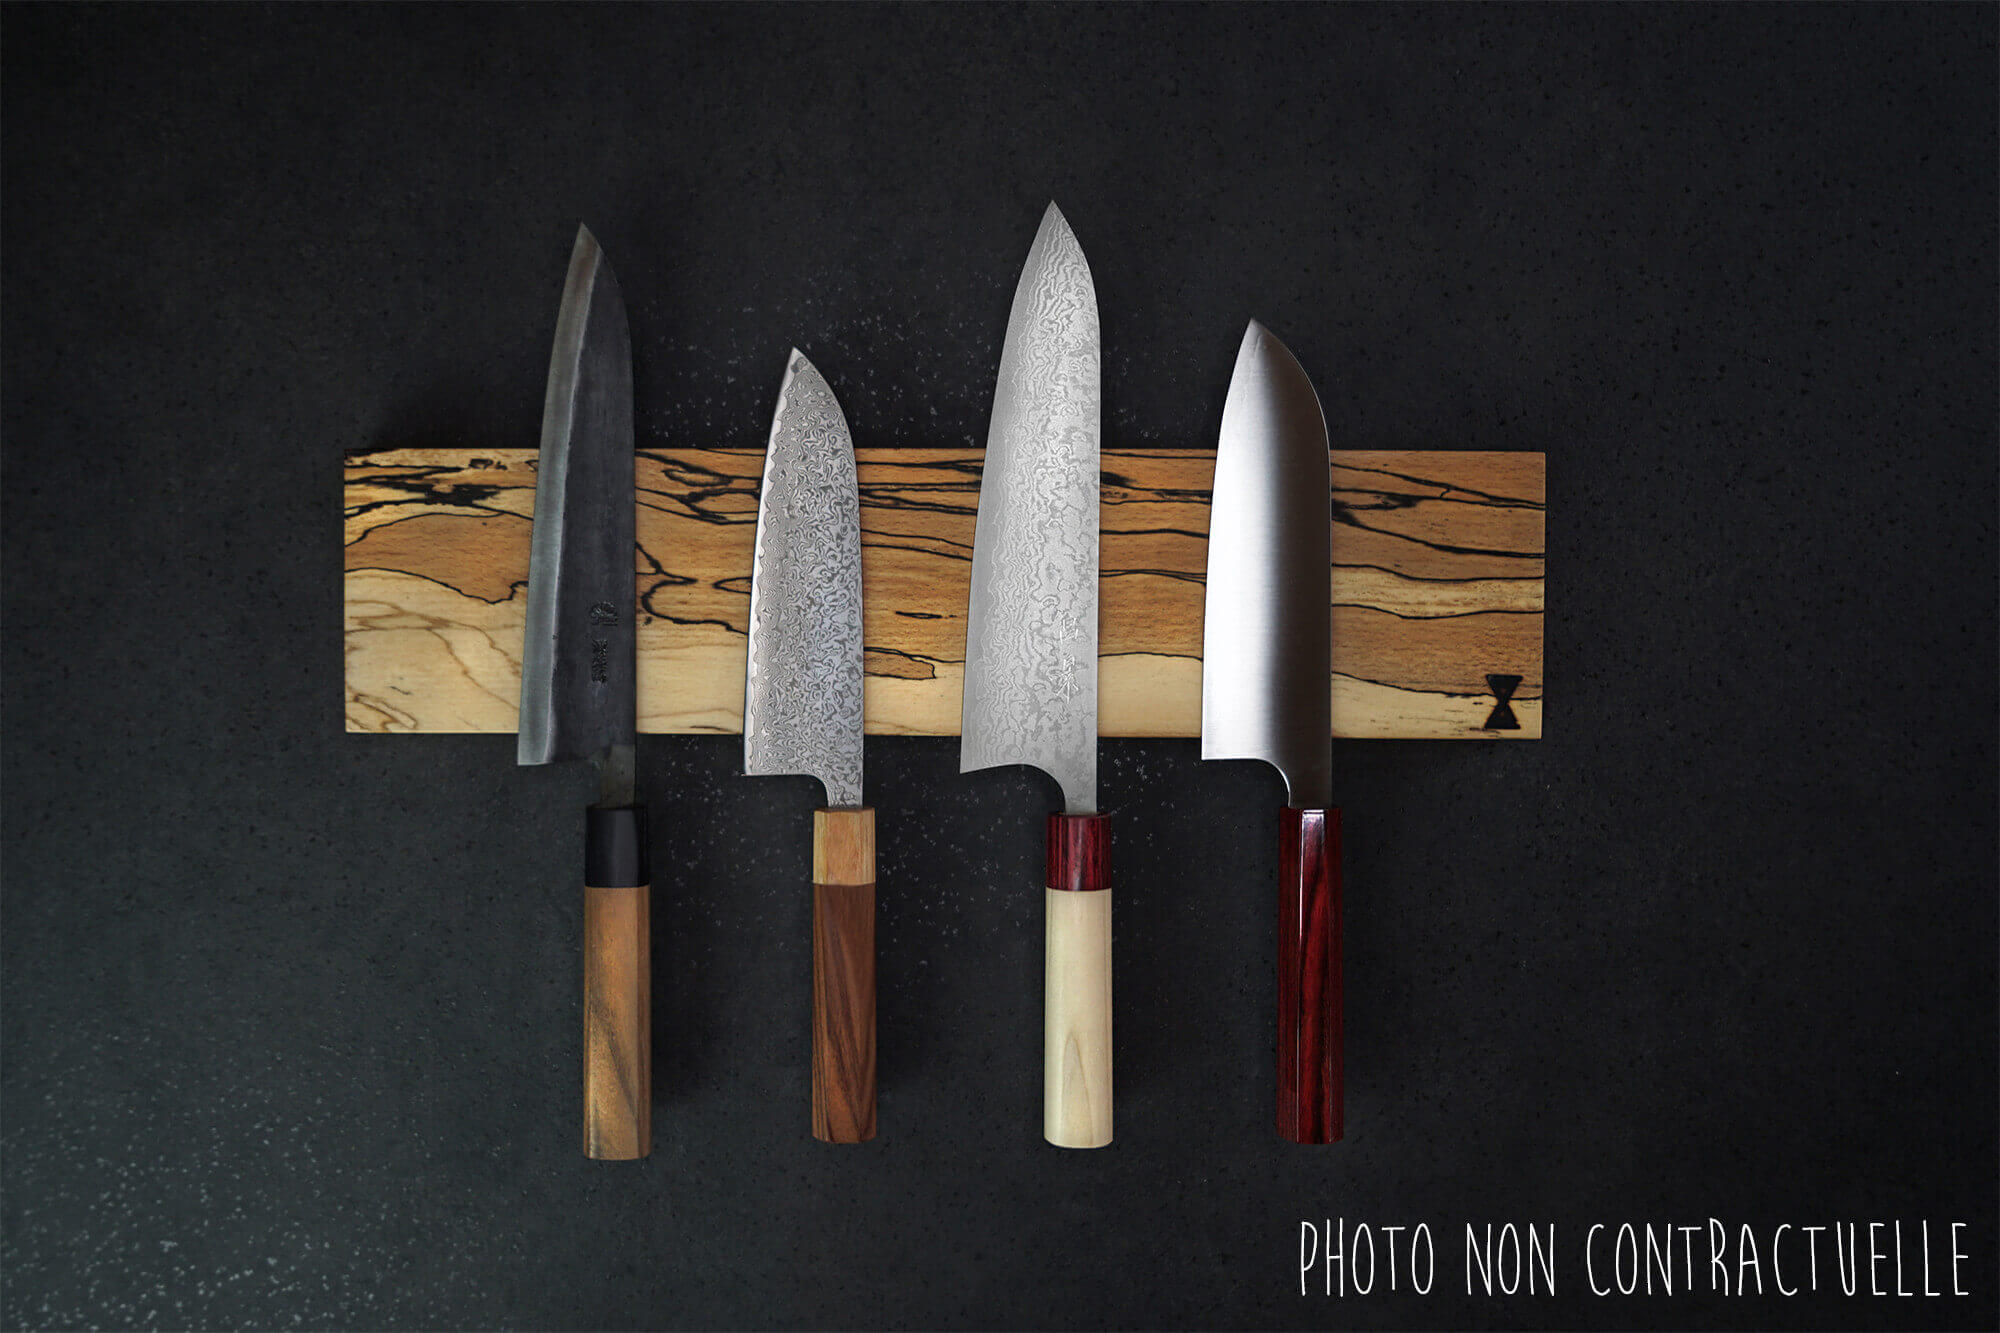 Barre aimantée en bambou Yaxell pour couteaux de cuisine - 30cm